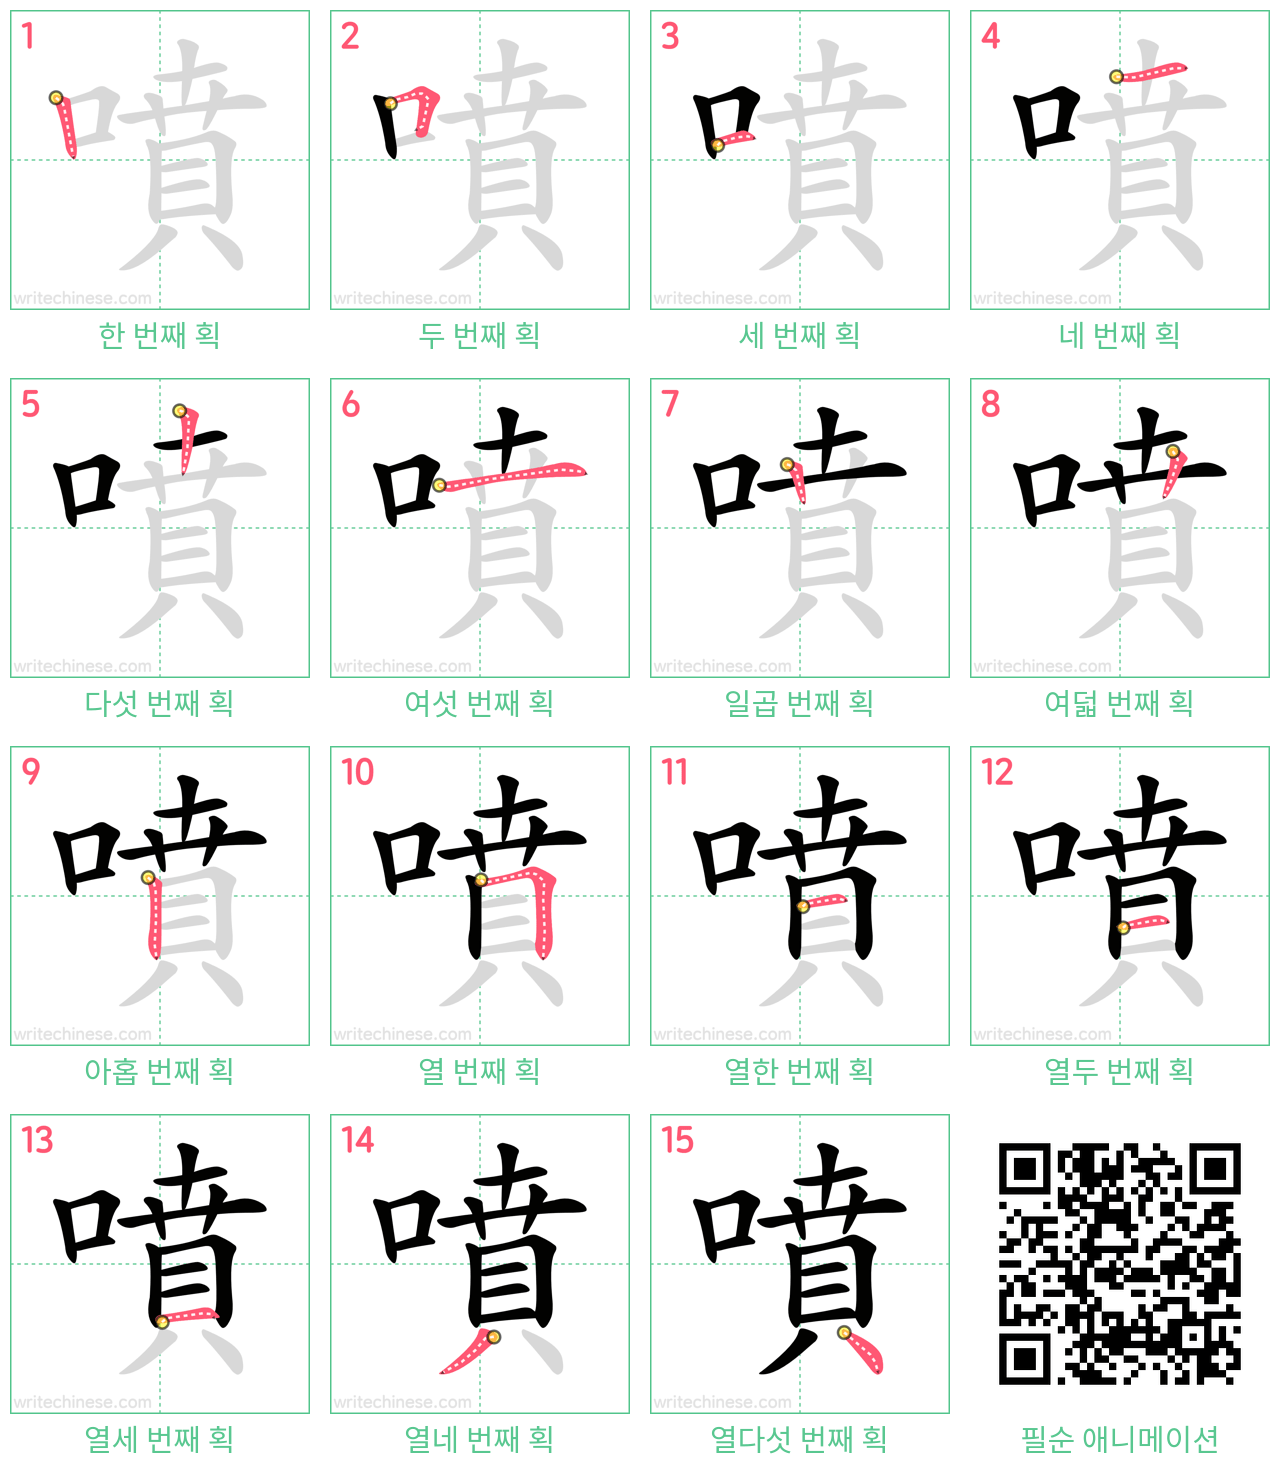 噴 step-by-step stroke order diagrams